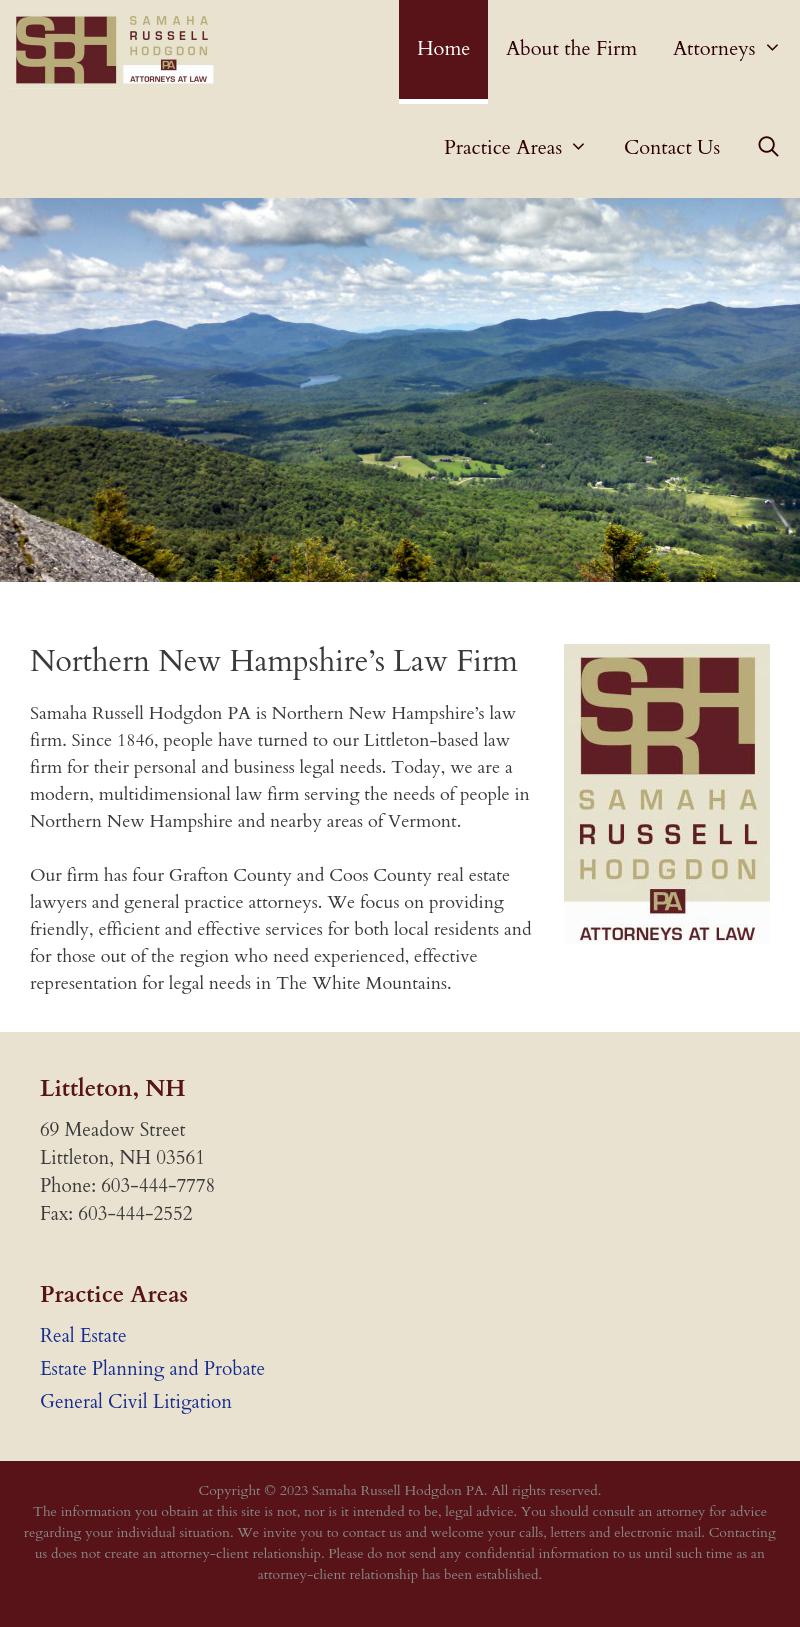 Samaha Russell Hodgdon PA - Littleton NH Lawyers